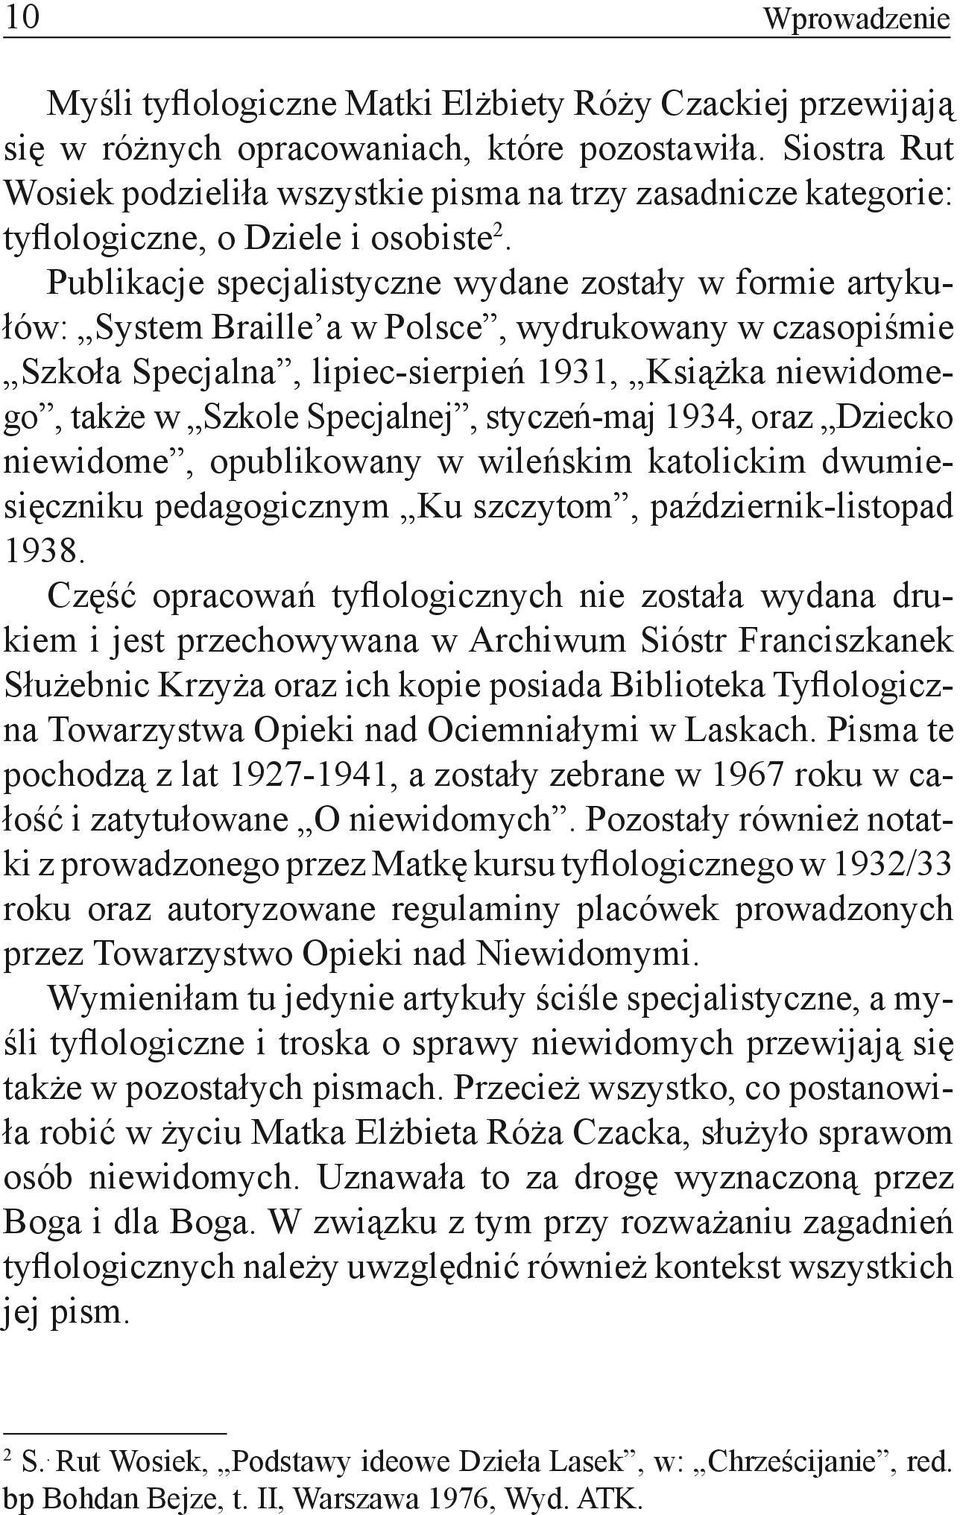 Publikacje specjalistyczne wydane zostały w formie artykułów: System Braille a w Polsce, wydrukowany w czasopiśmie Szkoła Specjalna, lipiec-sierpień 1931, Książka niewidomego, także w Szkole